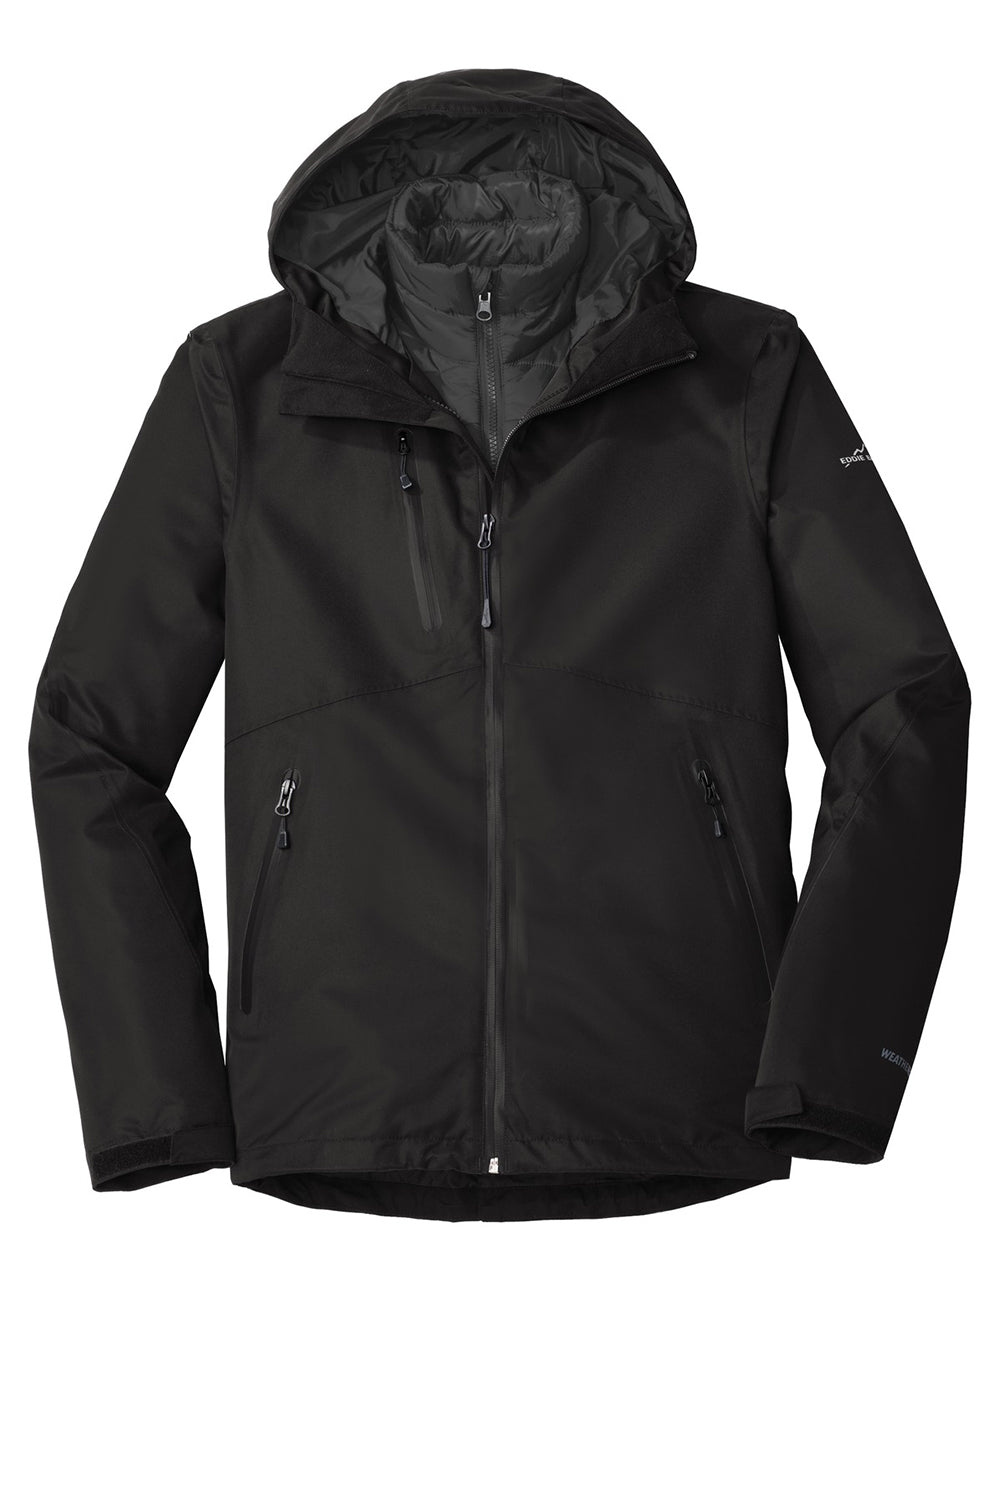 Eddie Bauer EB556 Mens WeatherEdge Plus 3-in-1 Waterproof Full Zip Hooded Jacket Black Flat Front